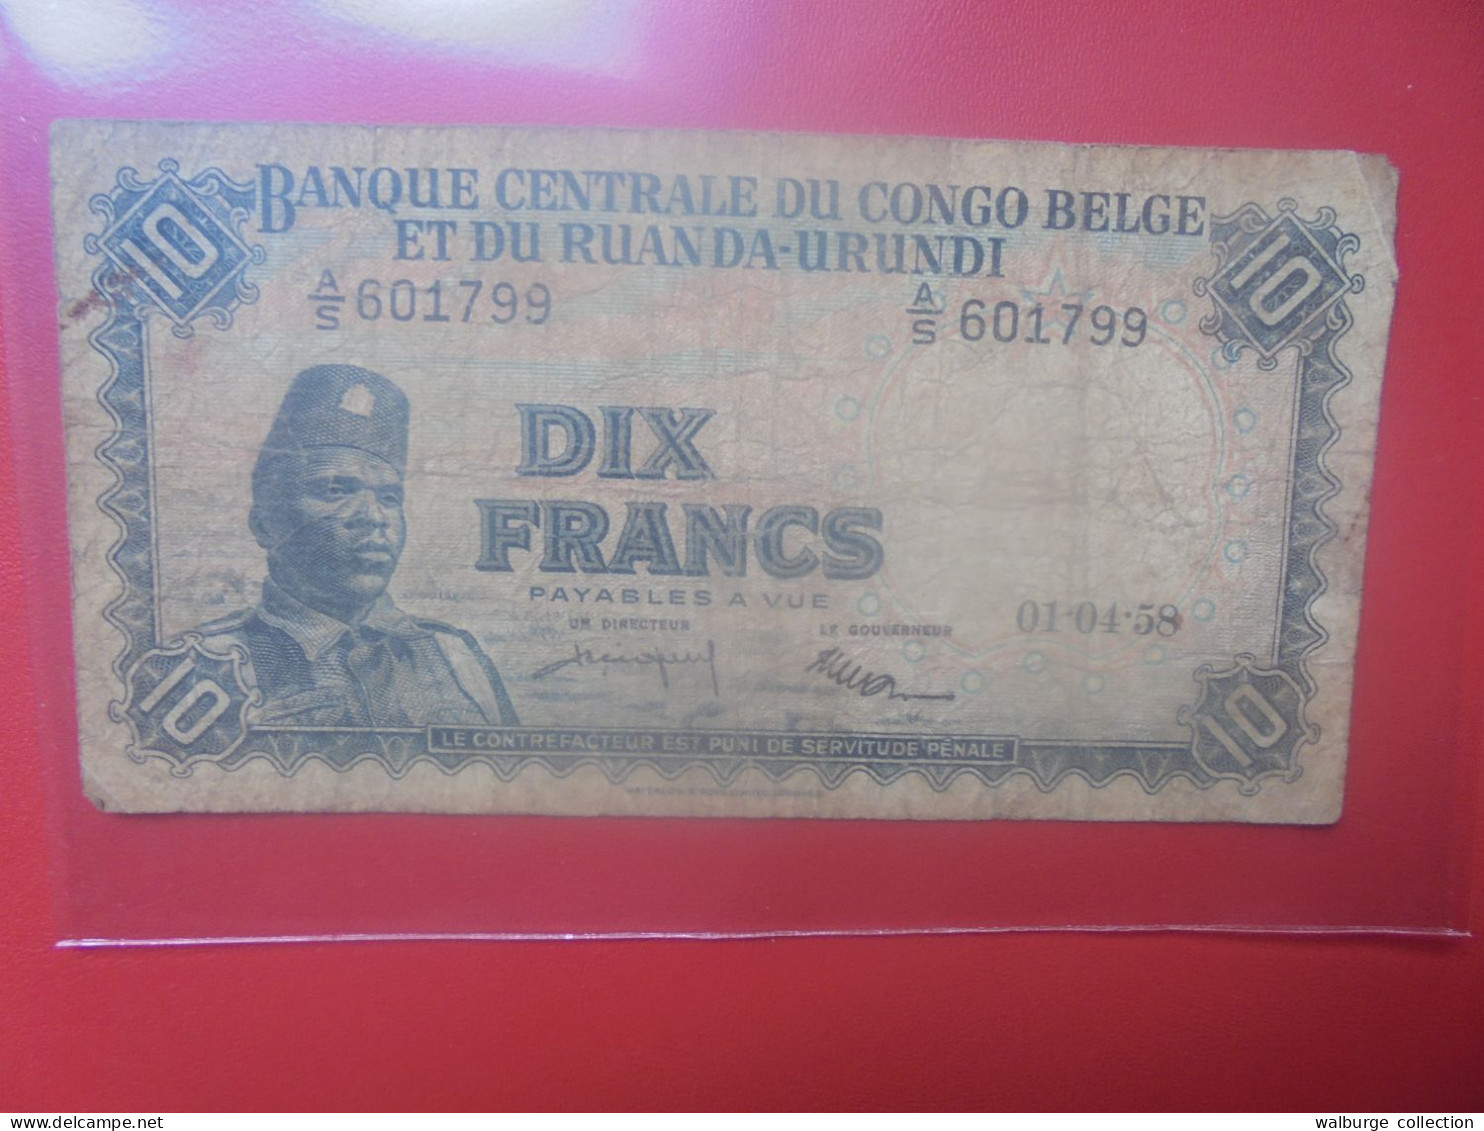 CONGO BELGE 10 FRANCS 1-4-58 Circuler (B.33) - Banque Du Congo Belge